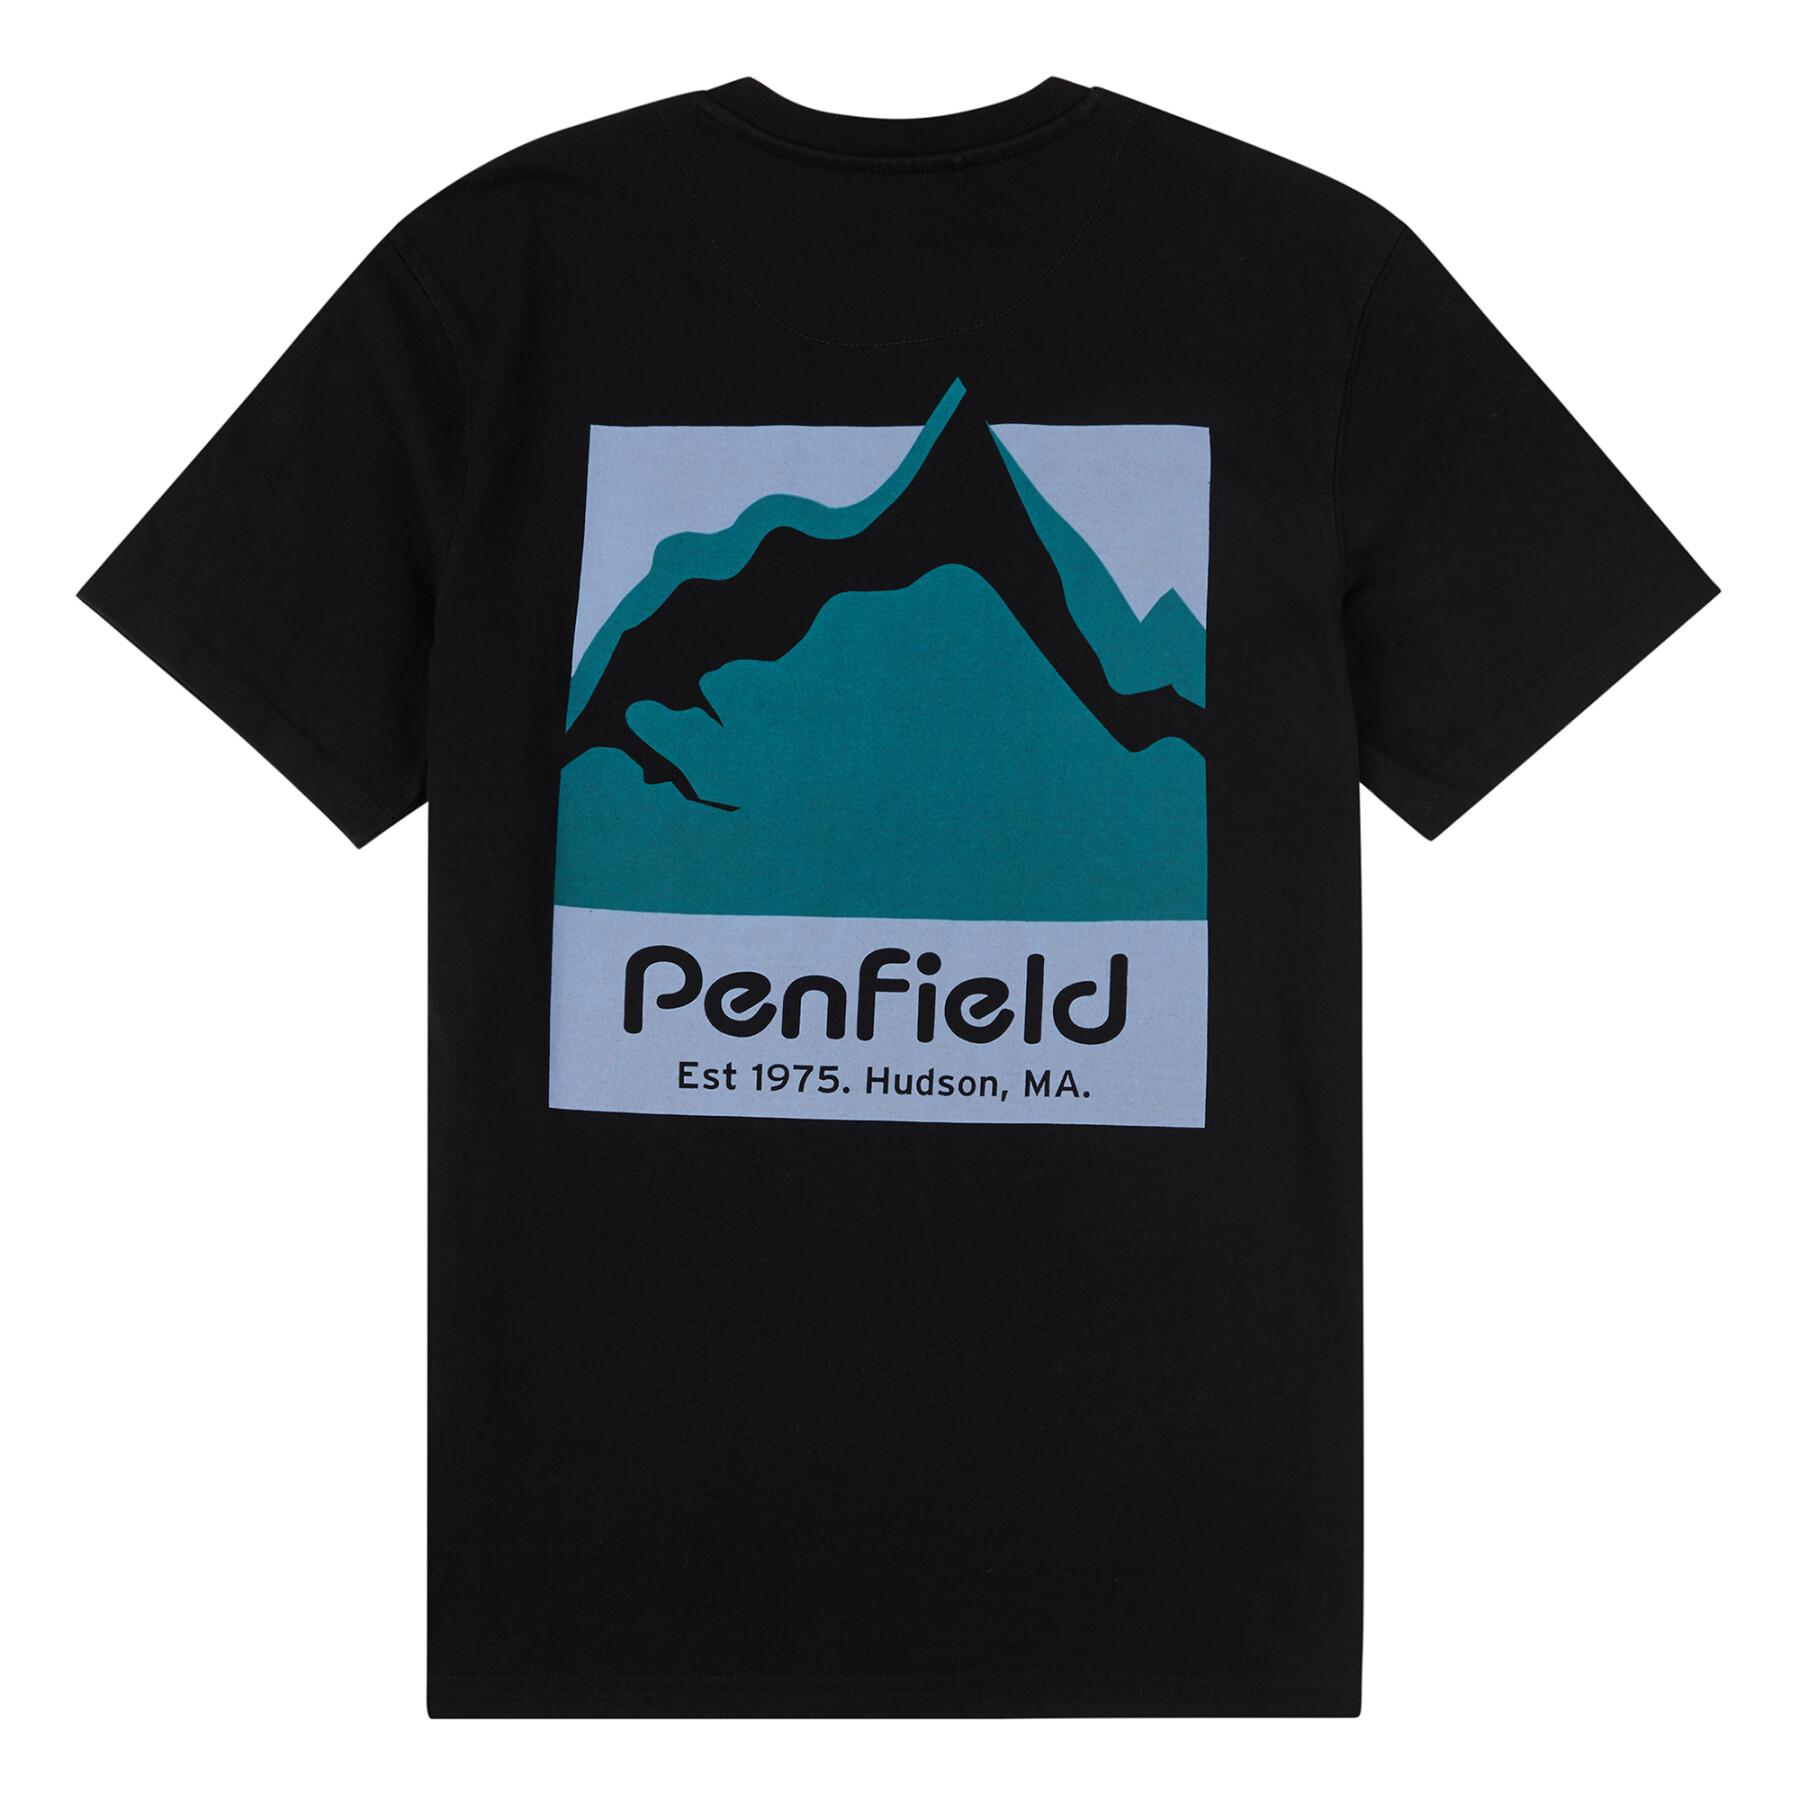 T-shirt Penfield Penfield Cena da montanha